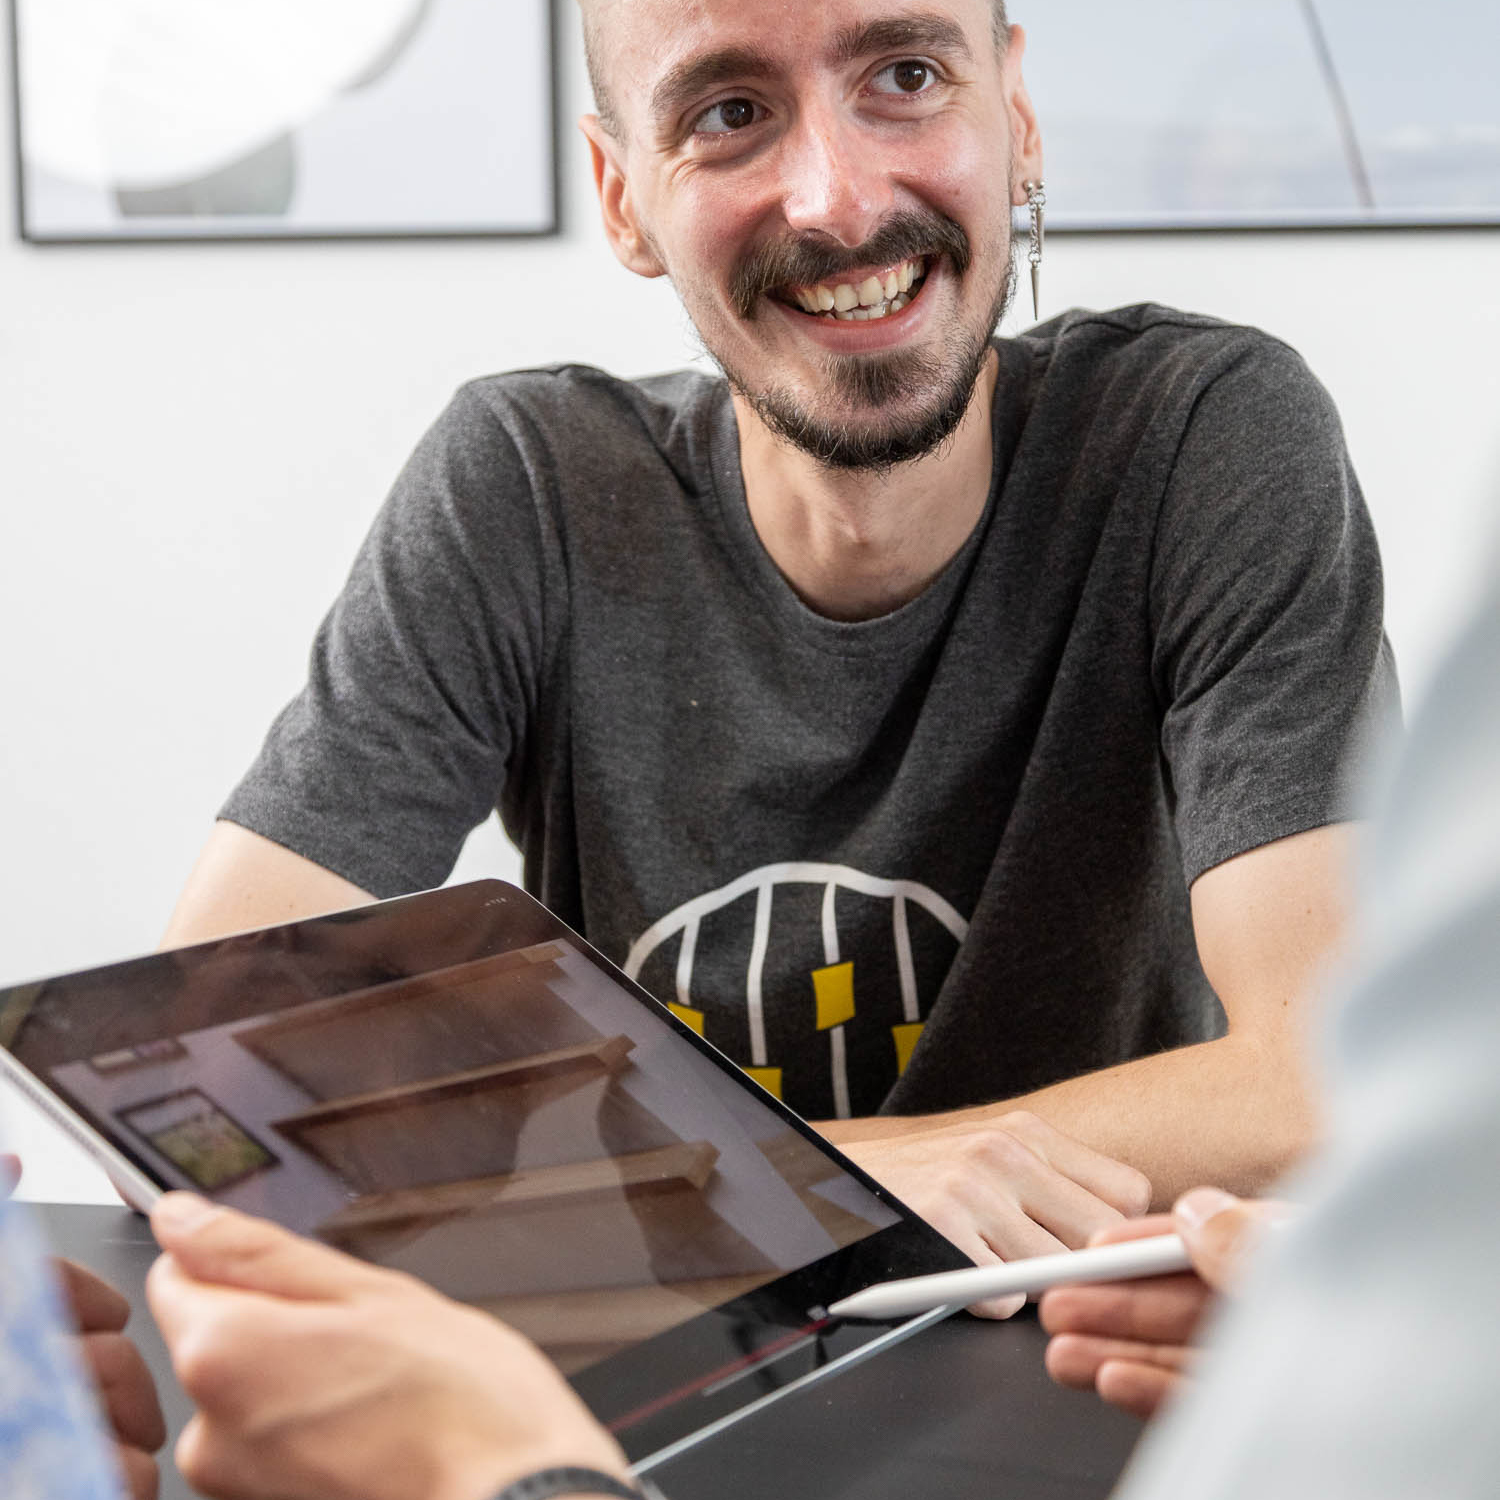 Ein lächelnder Mann mit Bart hält ein digitales Tablet und einen Stift in der Hand und interagiert mit jemandem außerhalb des Blickfelds während eines scheinbar gemeinschaftlichen Treffens bei einer Imagefilmagentur.